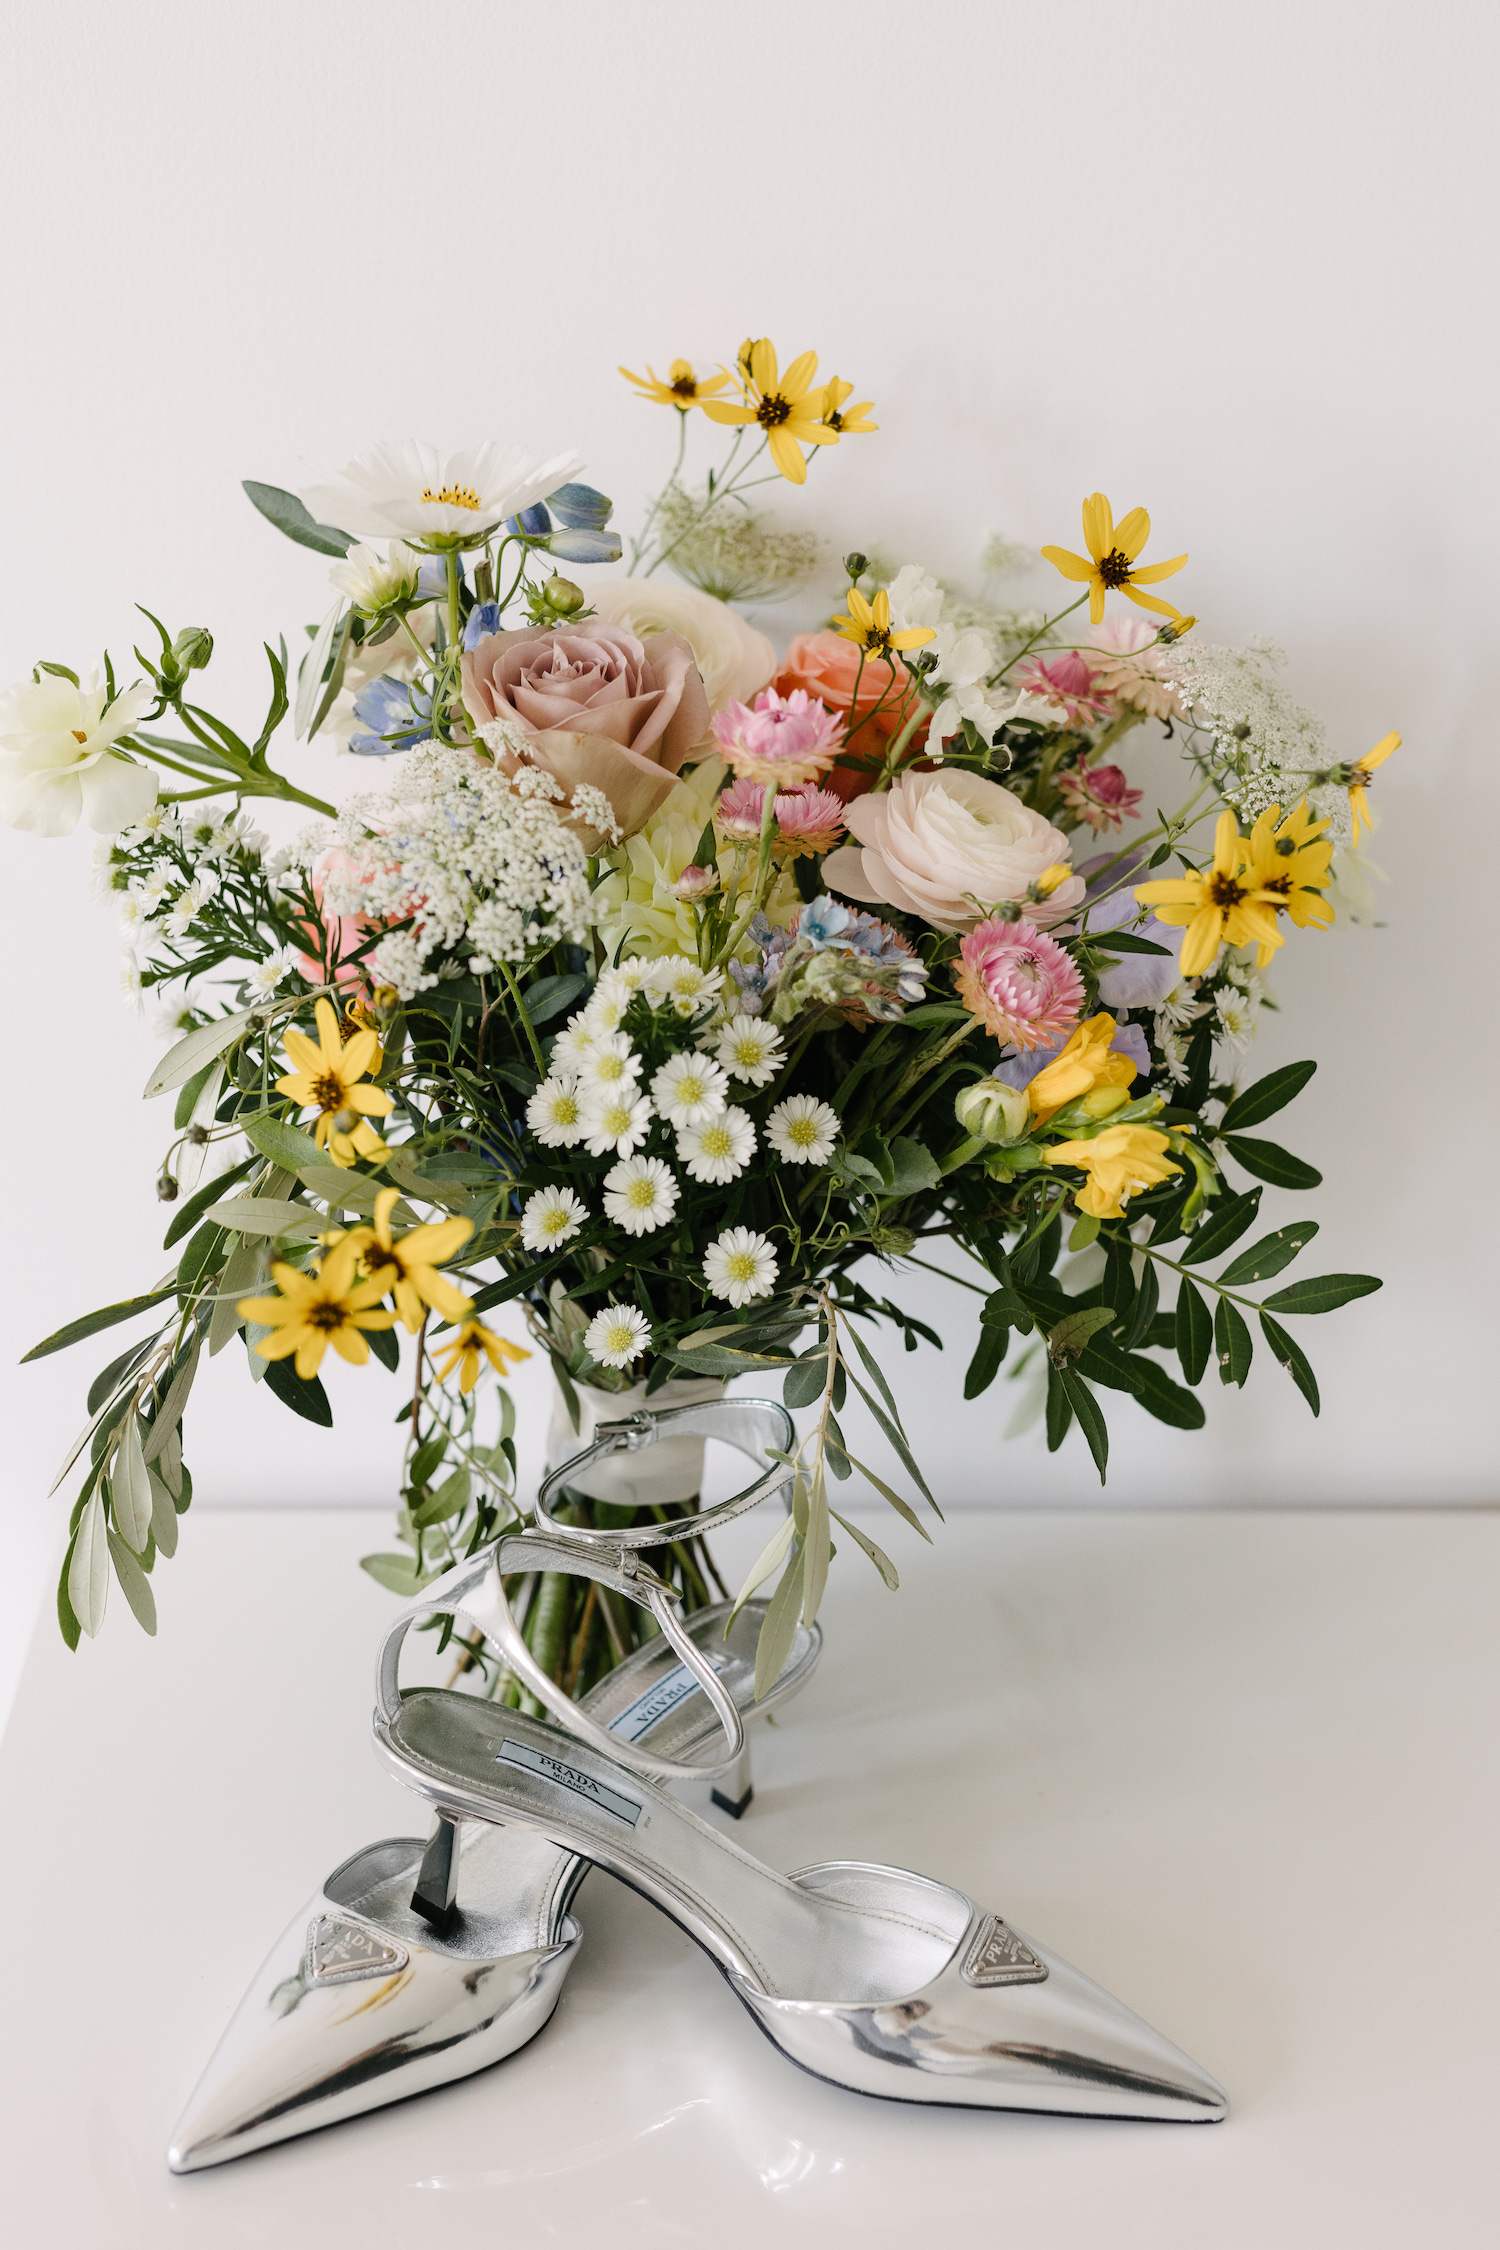 wildflower bridal bouquet